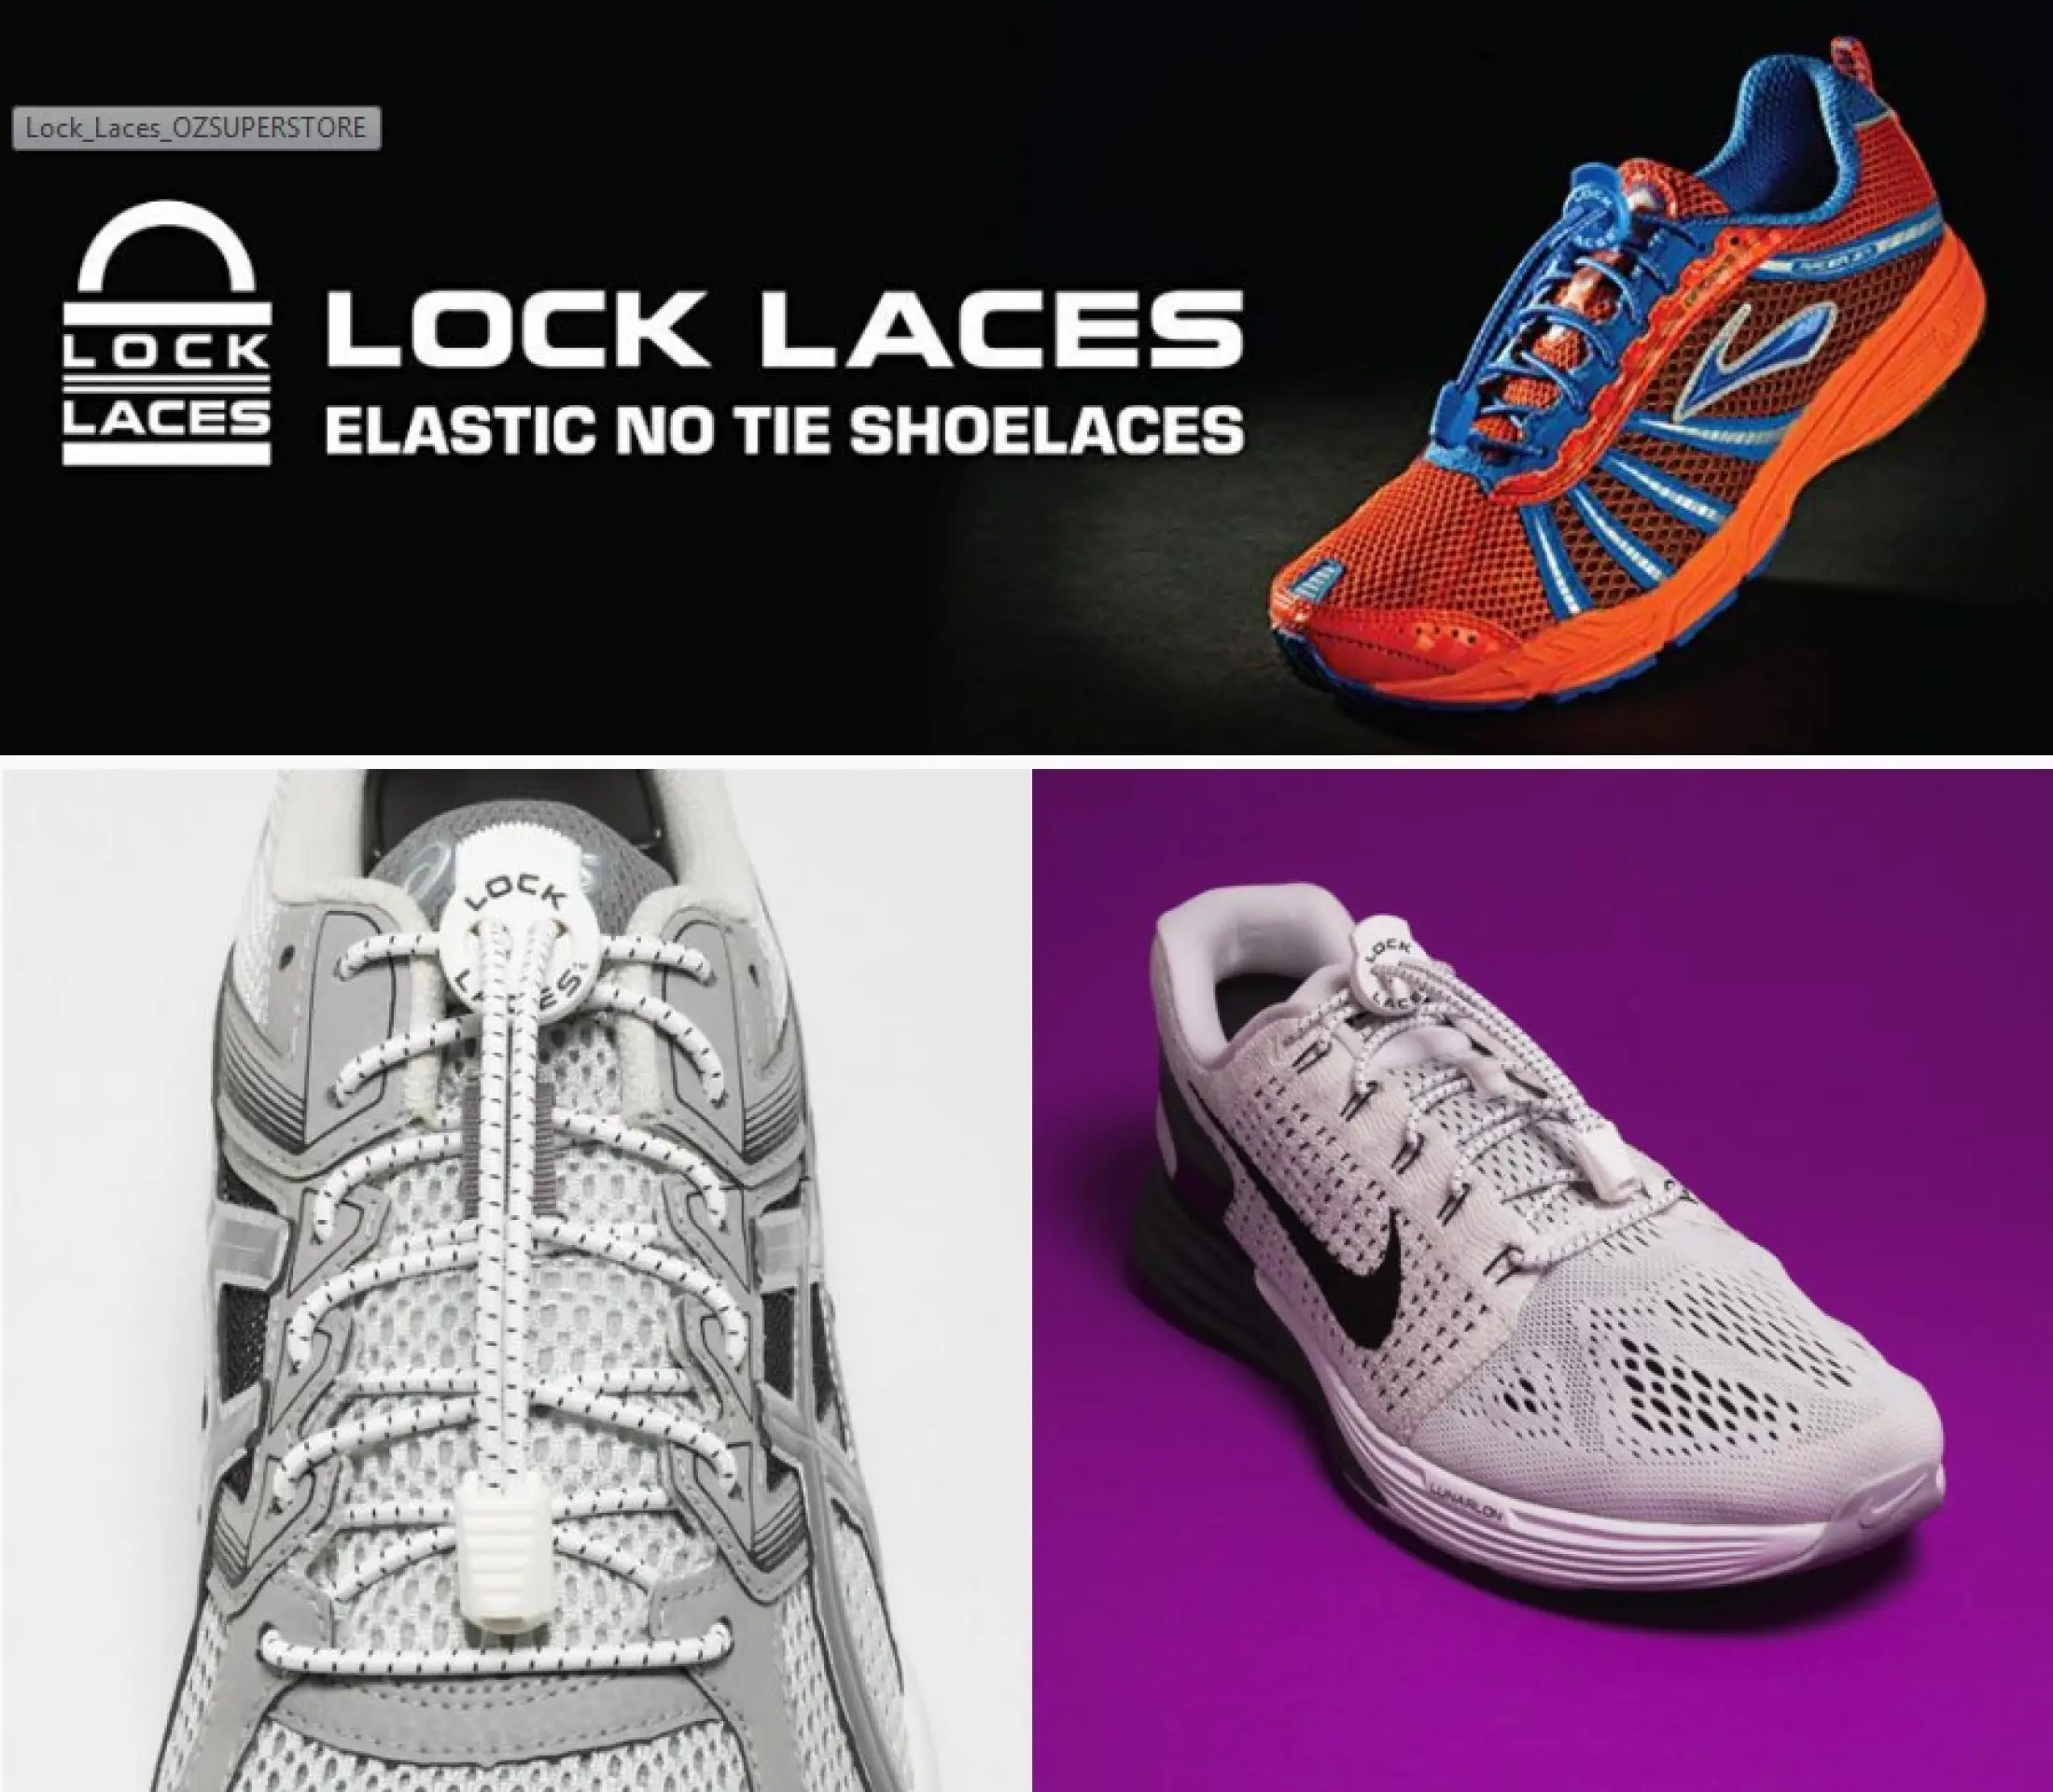 เกี่ยวกับสินค้า LOCKLACES USA เชือกรองเท้าไม่ต้องผูก 13 สี!! ป้องกันการสะดุด เชือกรองเท้าวิ่ง-กีฬา ล็อคแน่นไม่หลุด ไม่ต้องมัดเชือก 1 คู่